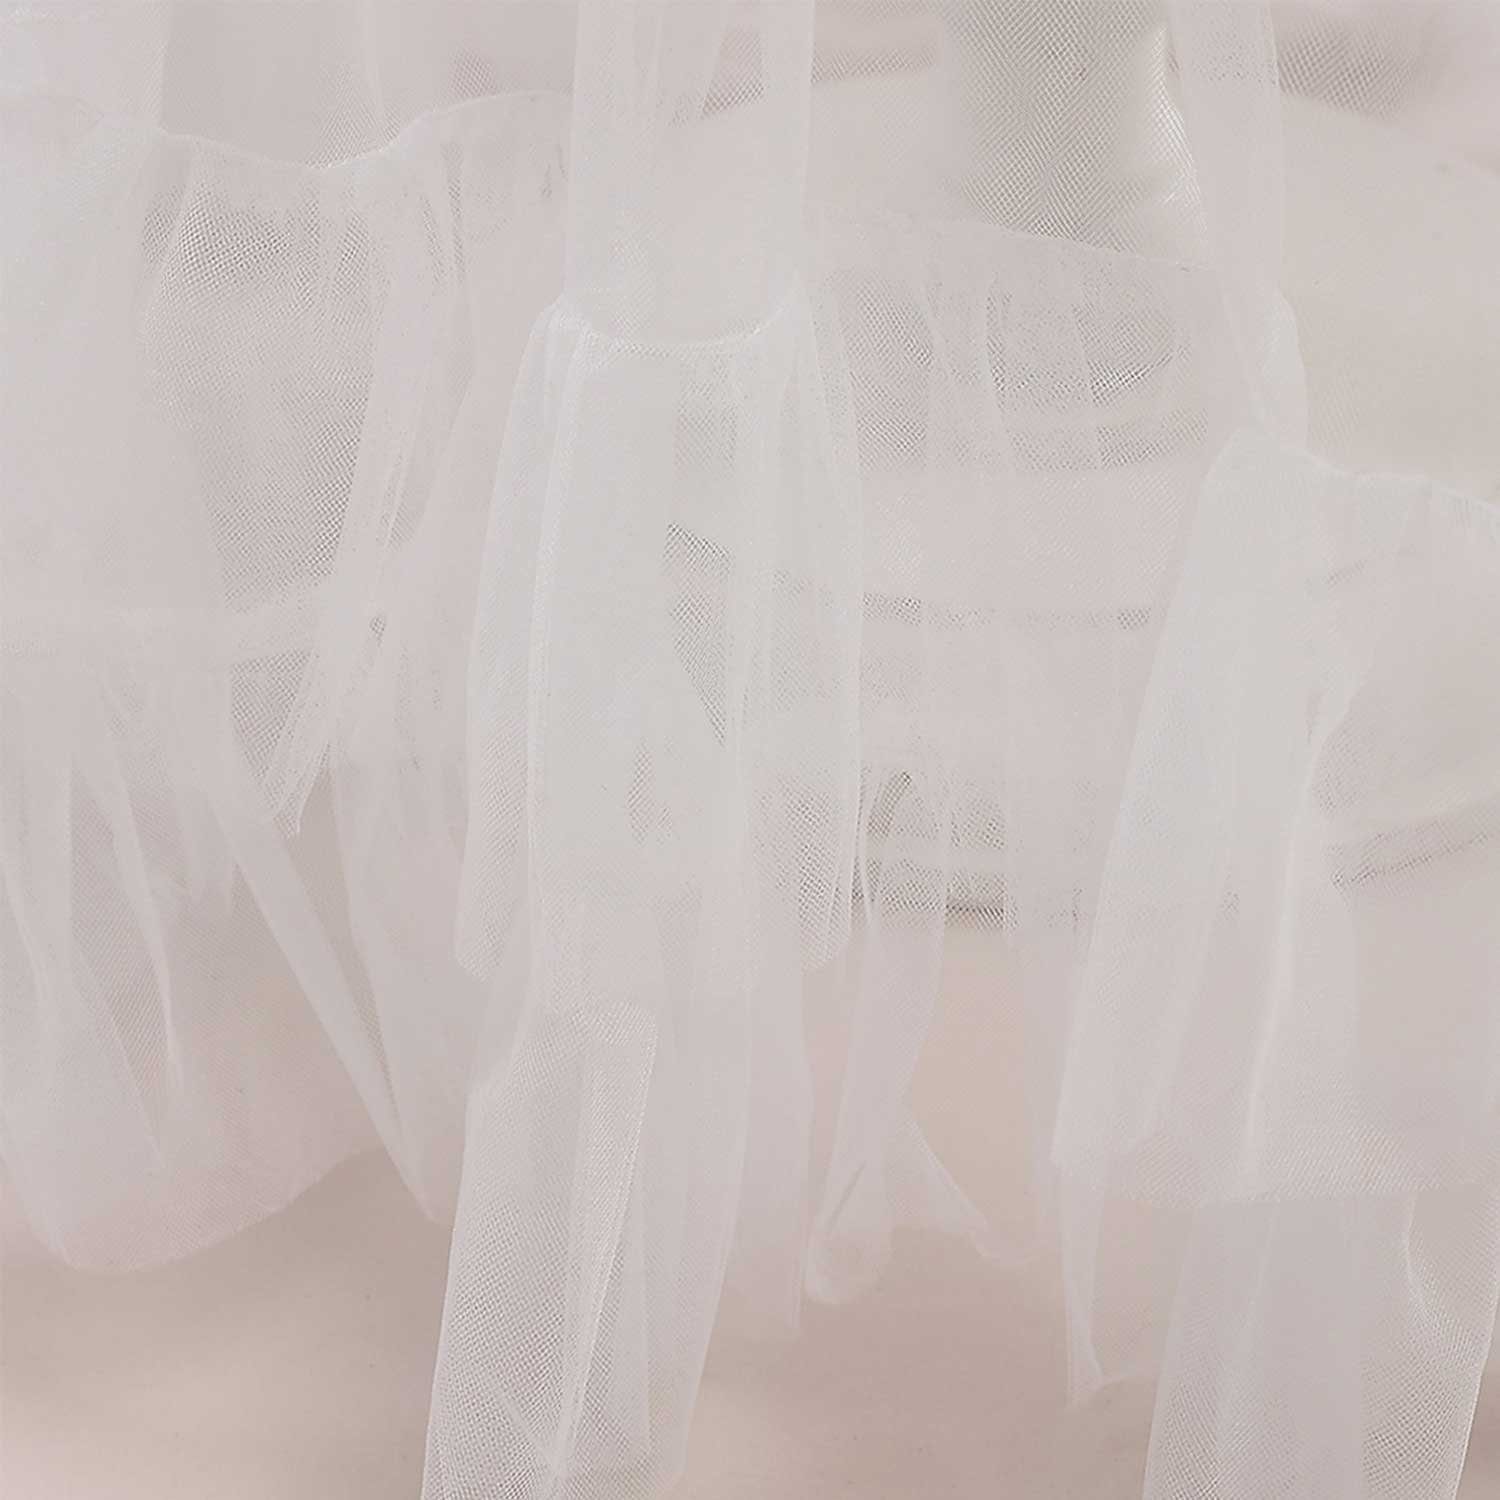 Abendkleid Daisred Prinzessinnenkleider Rosa Erstkommunionkleid Weiß Ballkleid